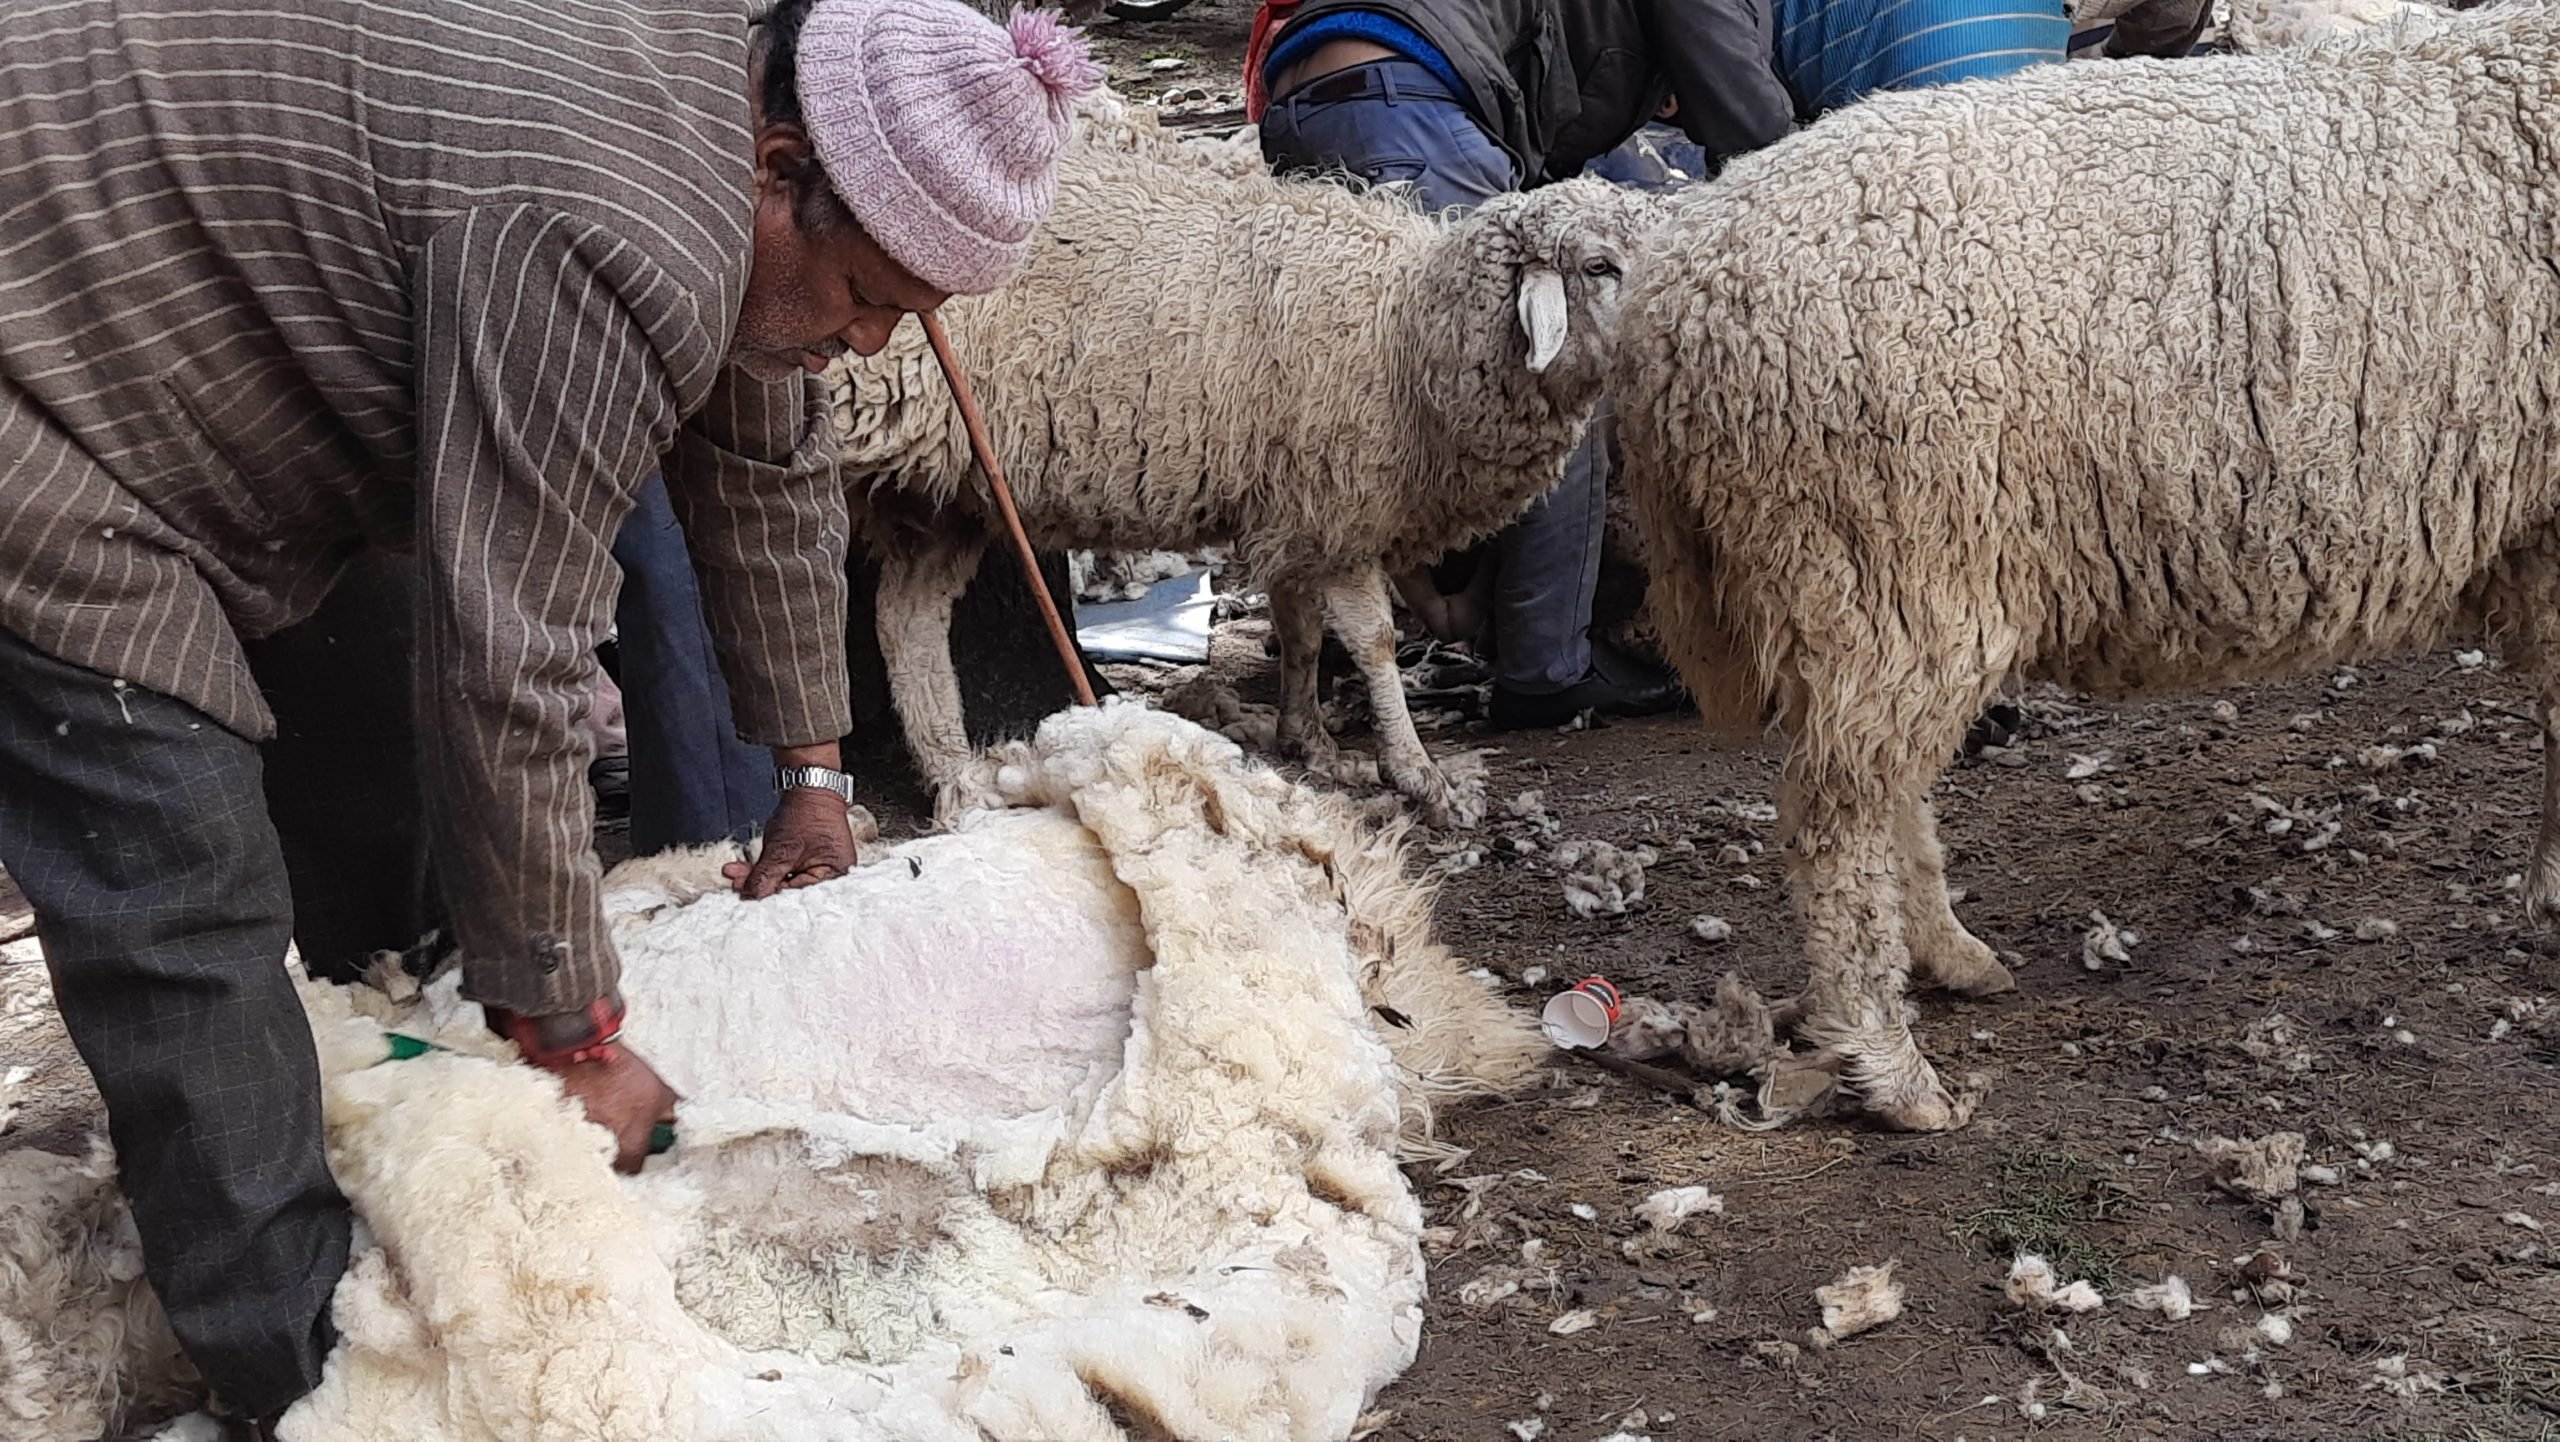 A Bhotia shepherd shearing wool in Bagori village, Uttarakhand.